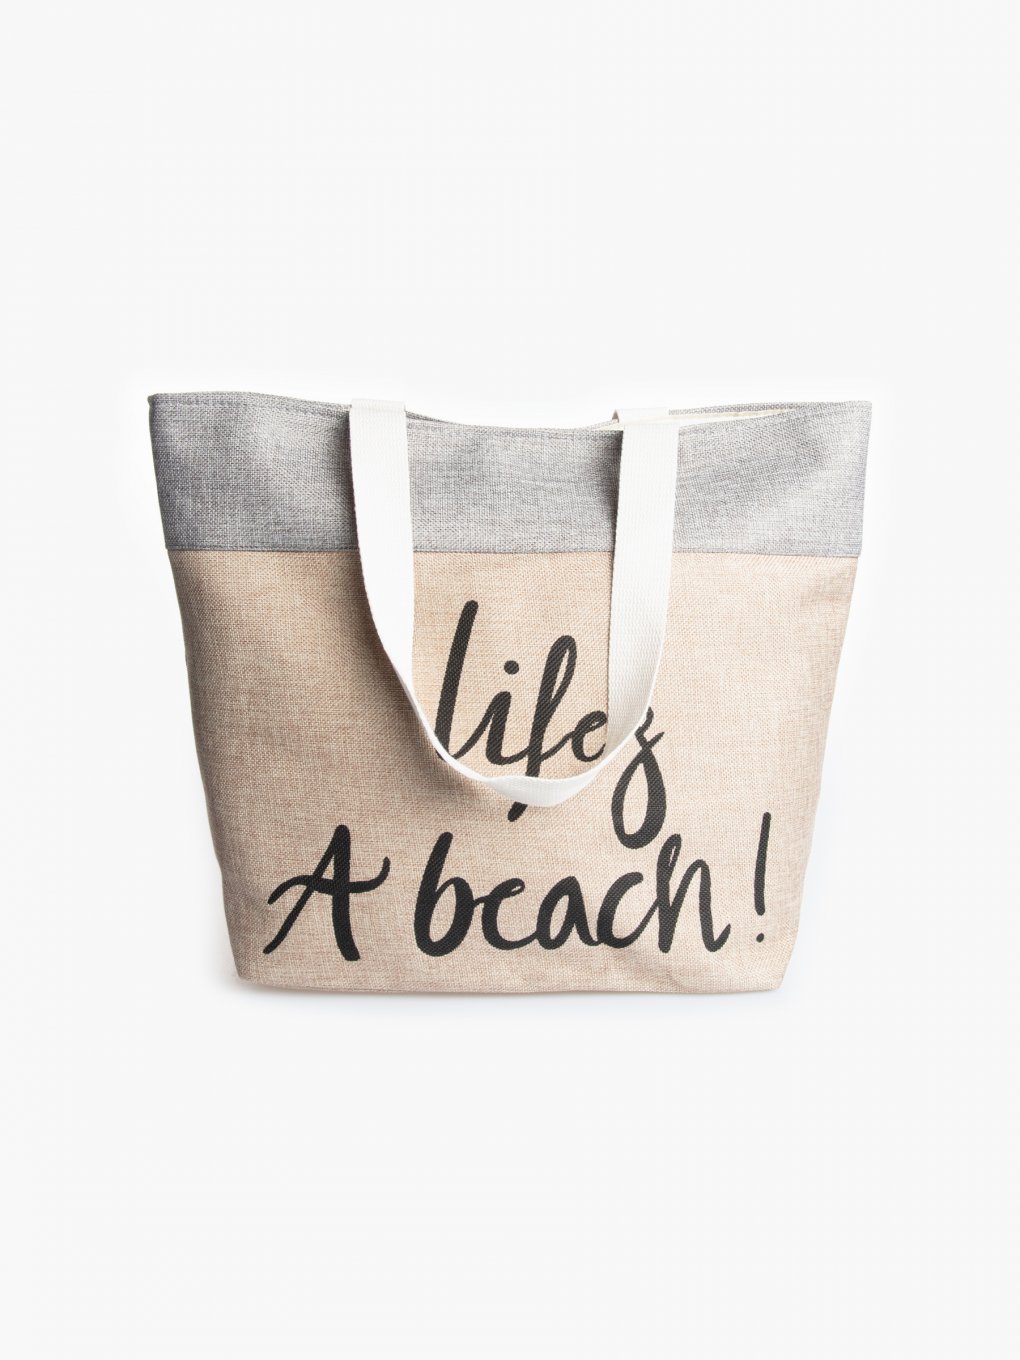 Plážová taška